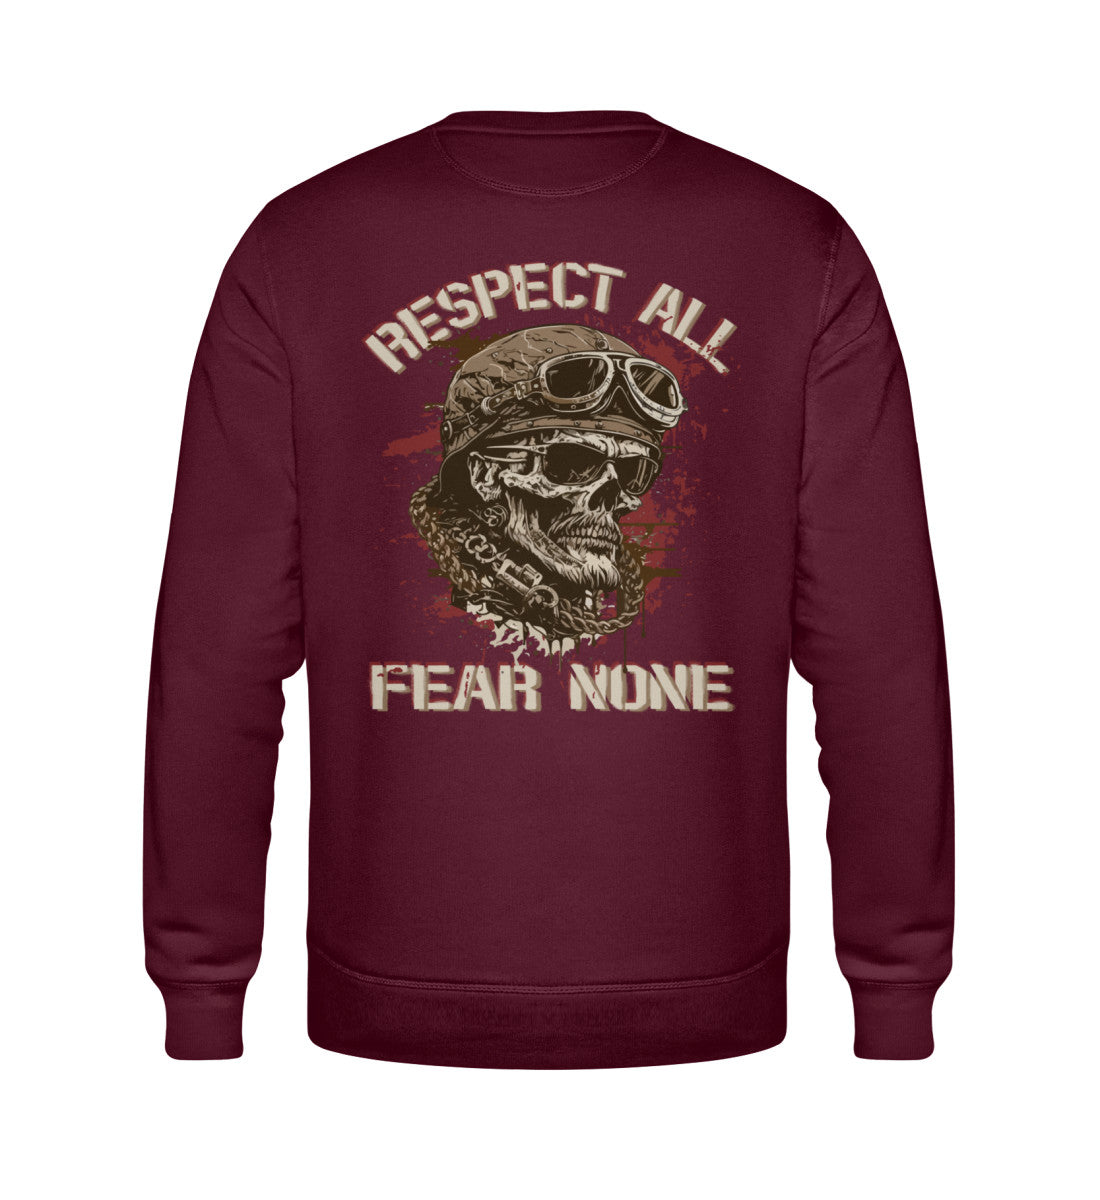 Ein Biker Sweatshirt für Motorradfahrer von Wingbikers mit dem Aufdruck, Respect All - Fear None, in burgunder weinrot.